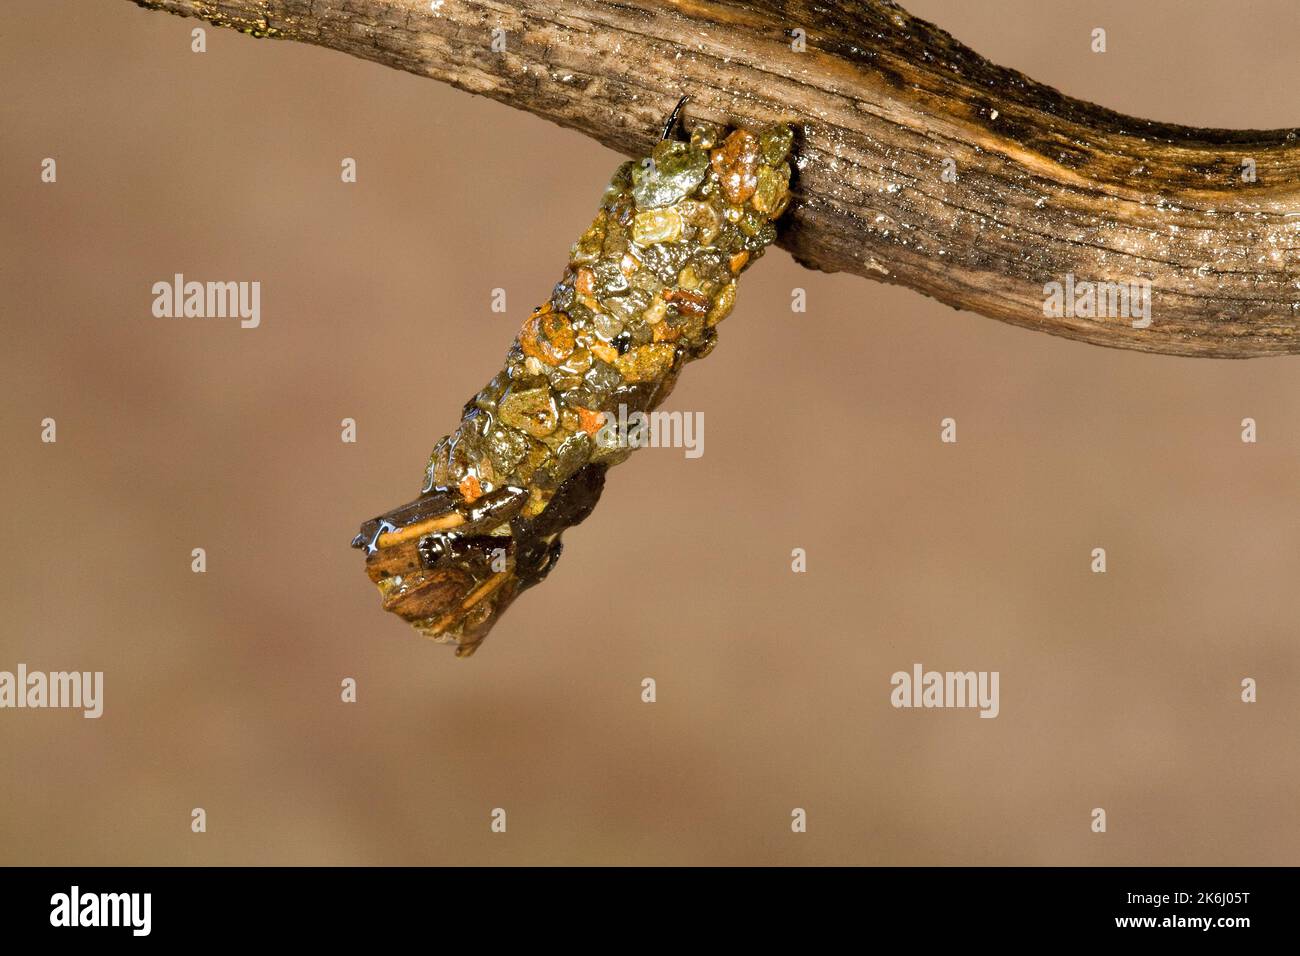 La larva de una mosca de caddis, encerrada en una vaina endurecida hecha de pequeñas rocas, colgando de una rama en el borde del agua justo antes de incubar a un adulto. Foto de stock